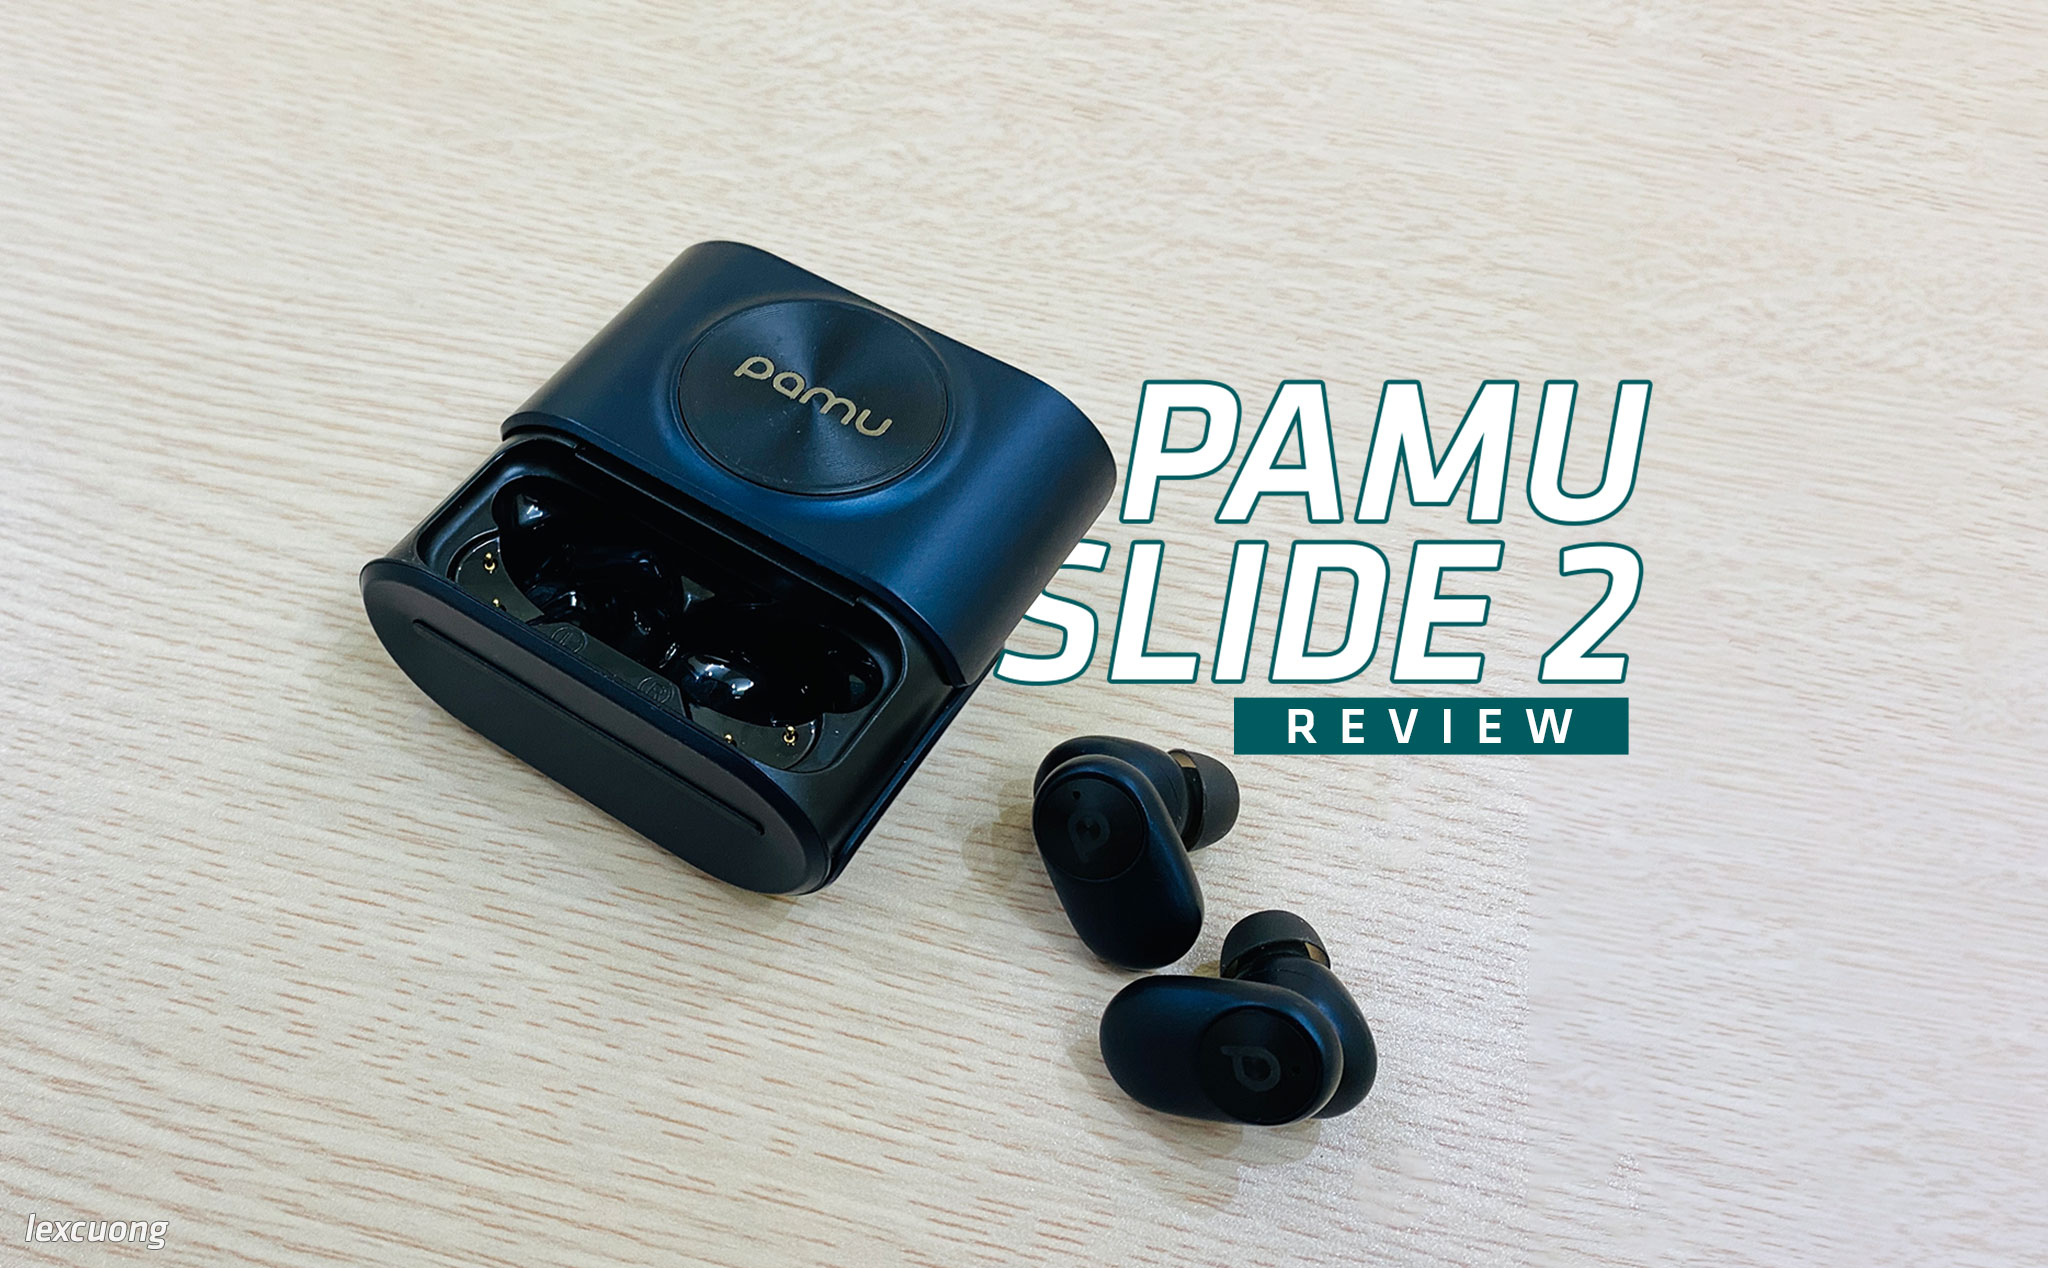 Review tai nghe Pamu Slide 2: Mic ổn, có chống ồn chủ động, lọc gió tốt